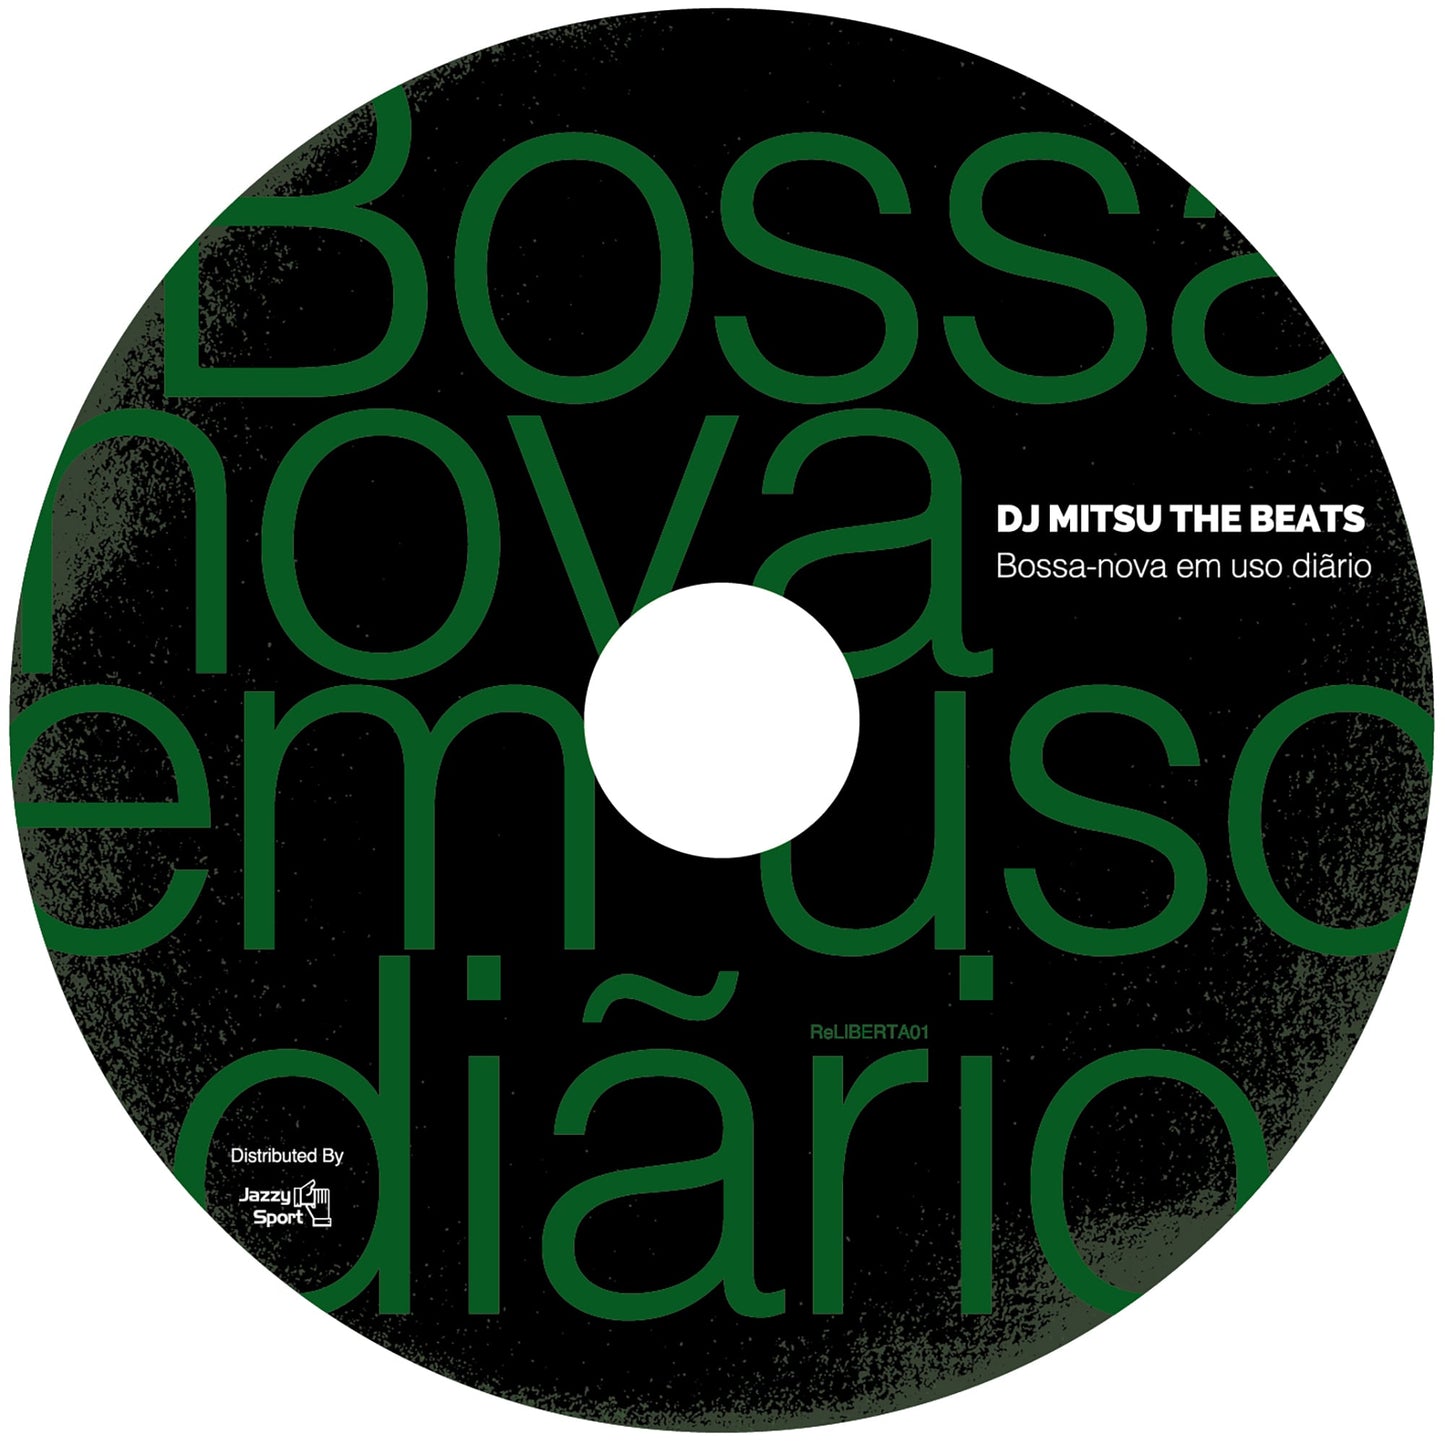 【Restock／CD】DJ Mitsu the Beats - Bossa-nova em uso diãrio